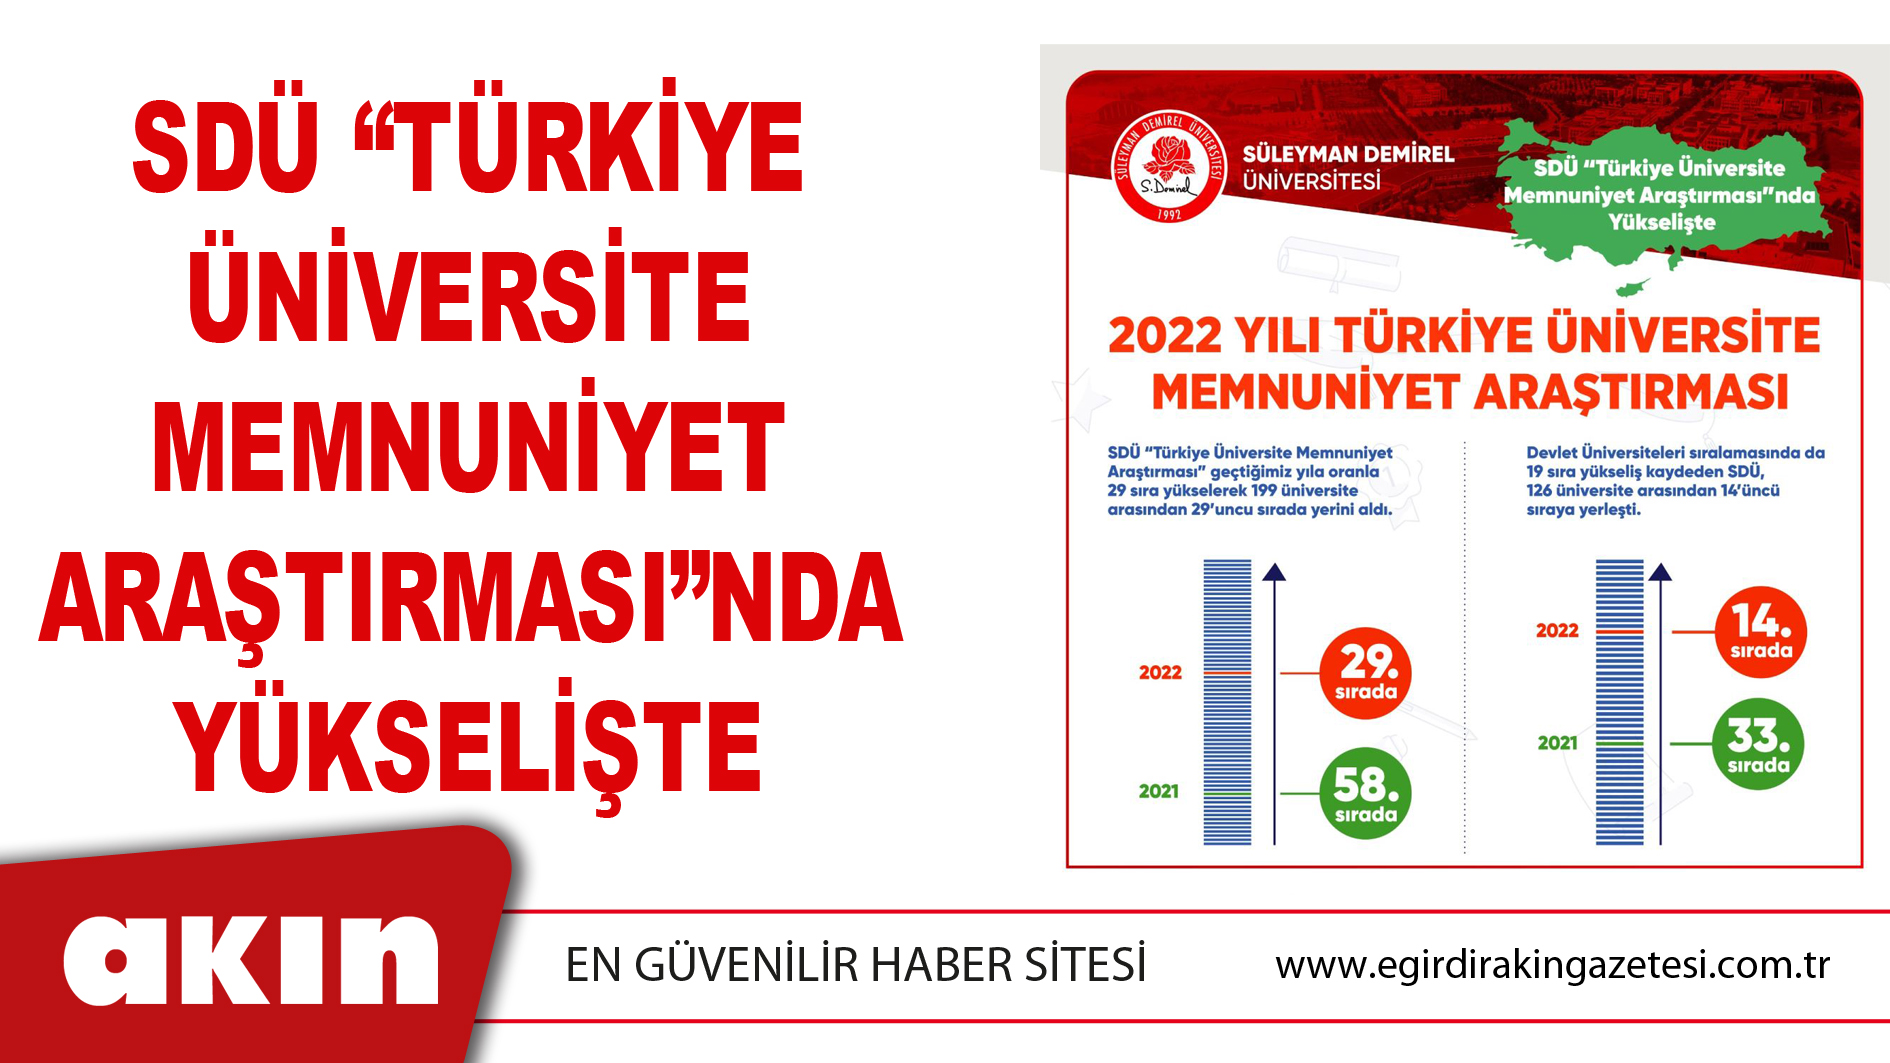 SDÜ “Türkiye Üniversite Memnuniyet Araştırması”nda Yükselişte